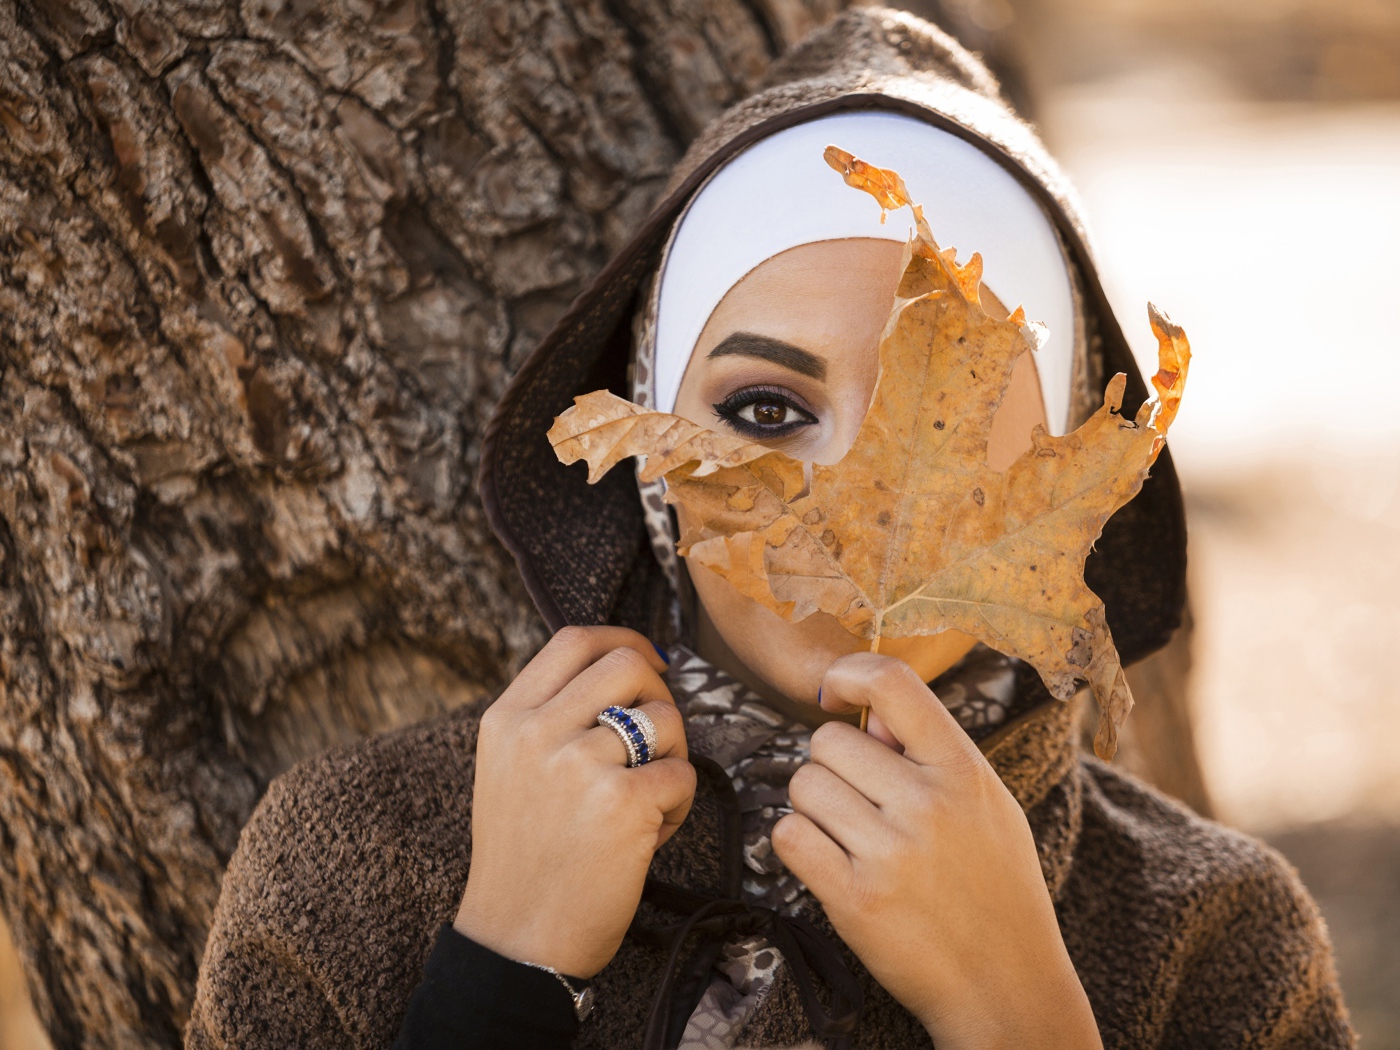 Девушка в пальто с закрывает лицо листом